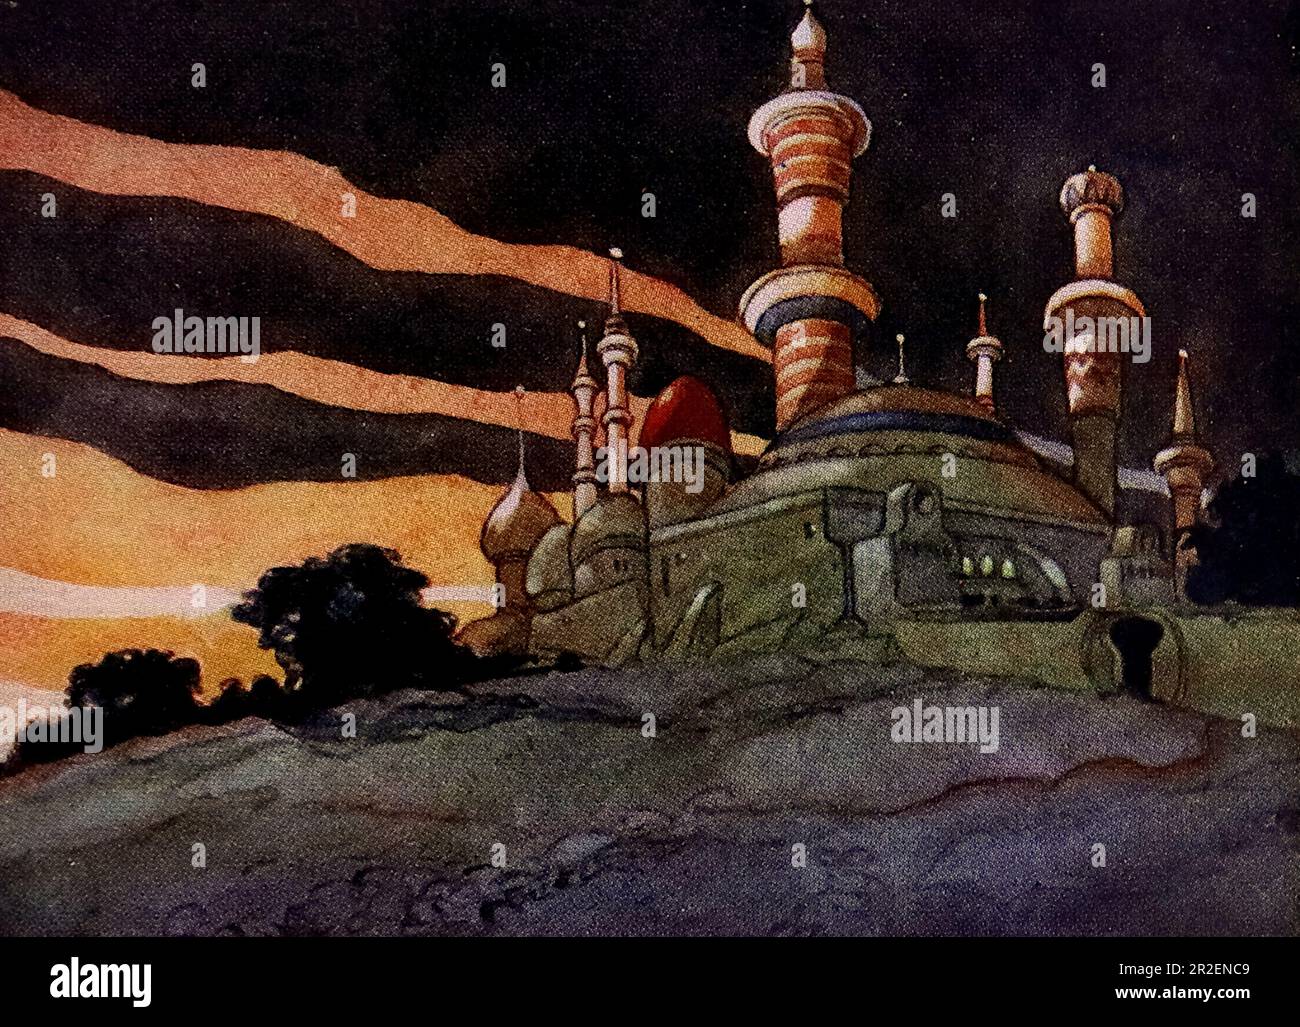 Von Rene Bull Farbe: Ein Schloss des Sultans mit hohen Türmen. Aus Richtung Rubaiyat von Omar Khayyam. Stockfoto